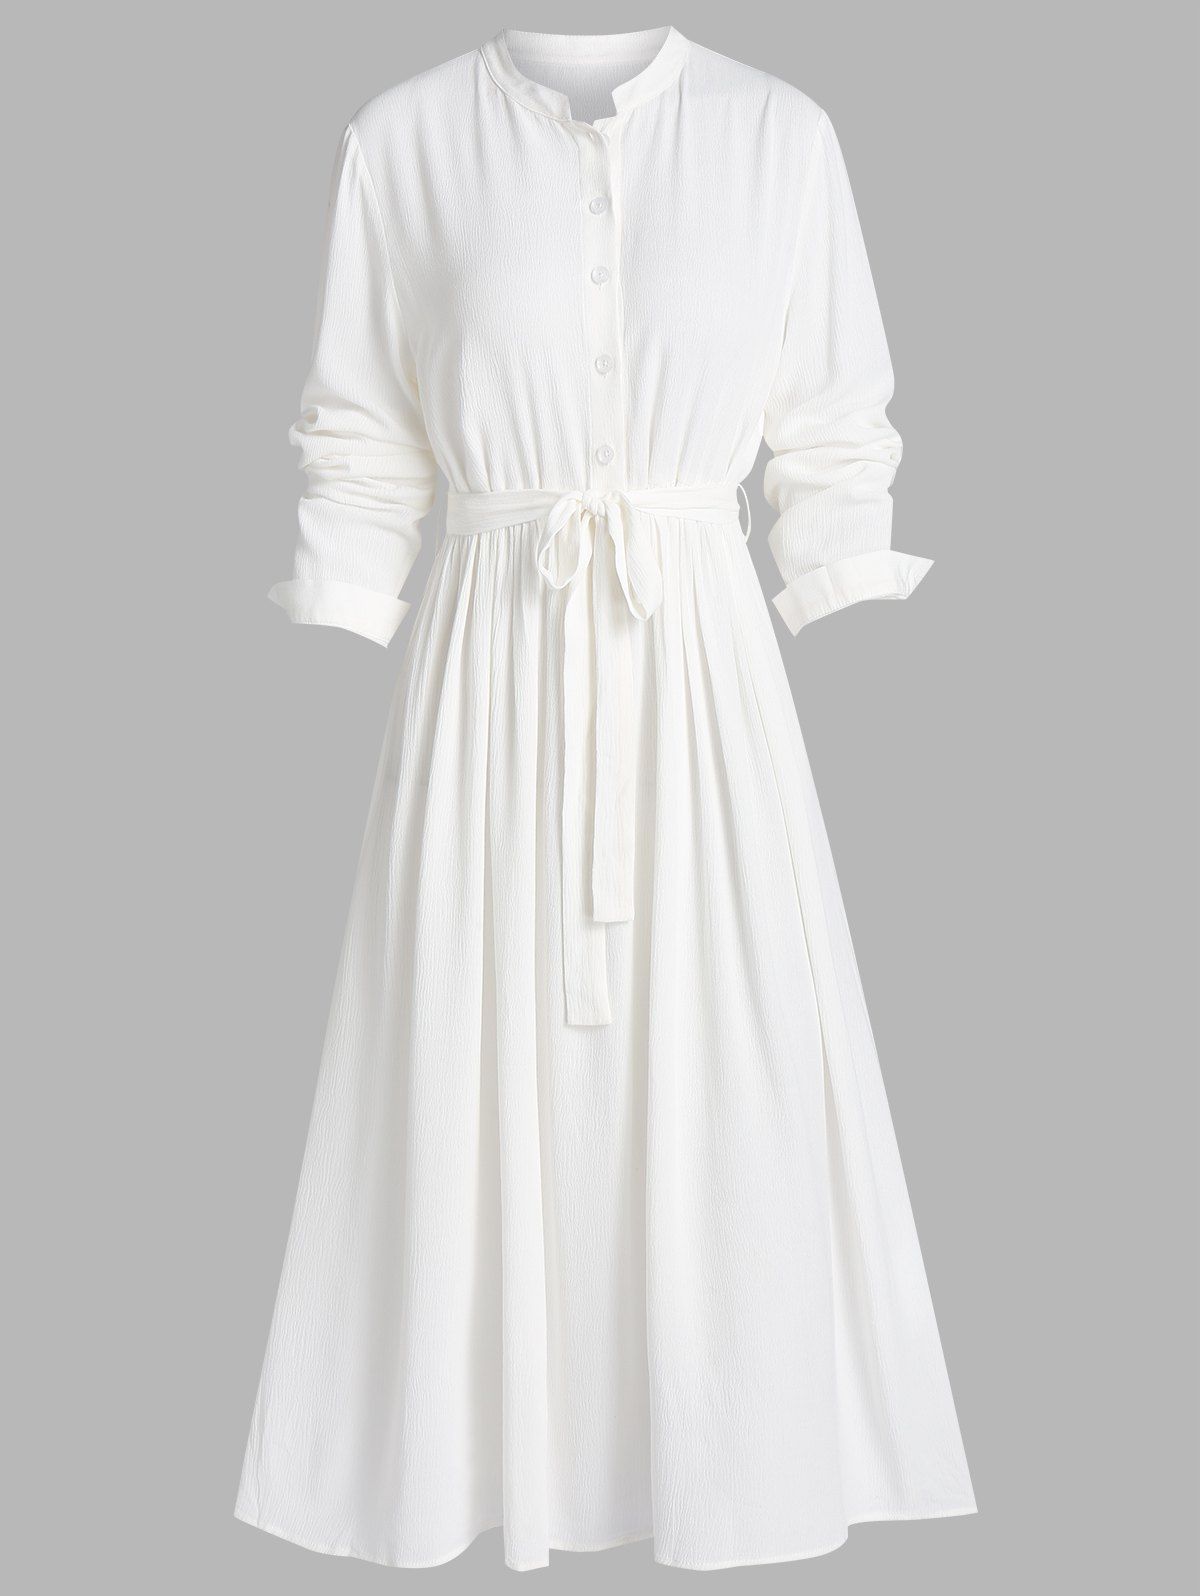 Plain Bowknot Belt Stand Collar Button A Line Shirt Dress - WHITE XL